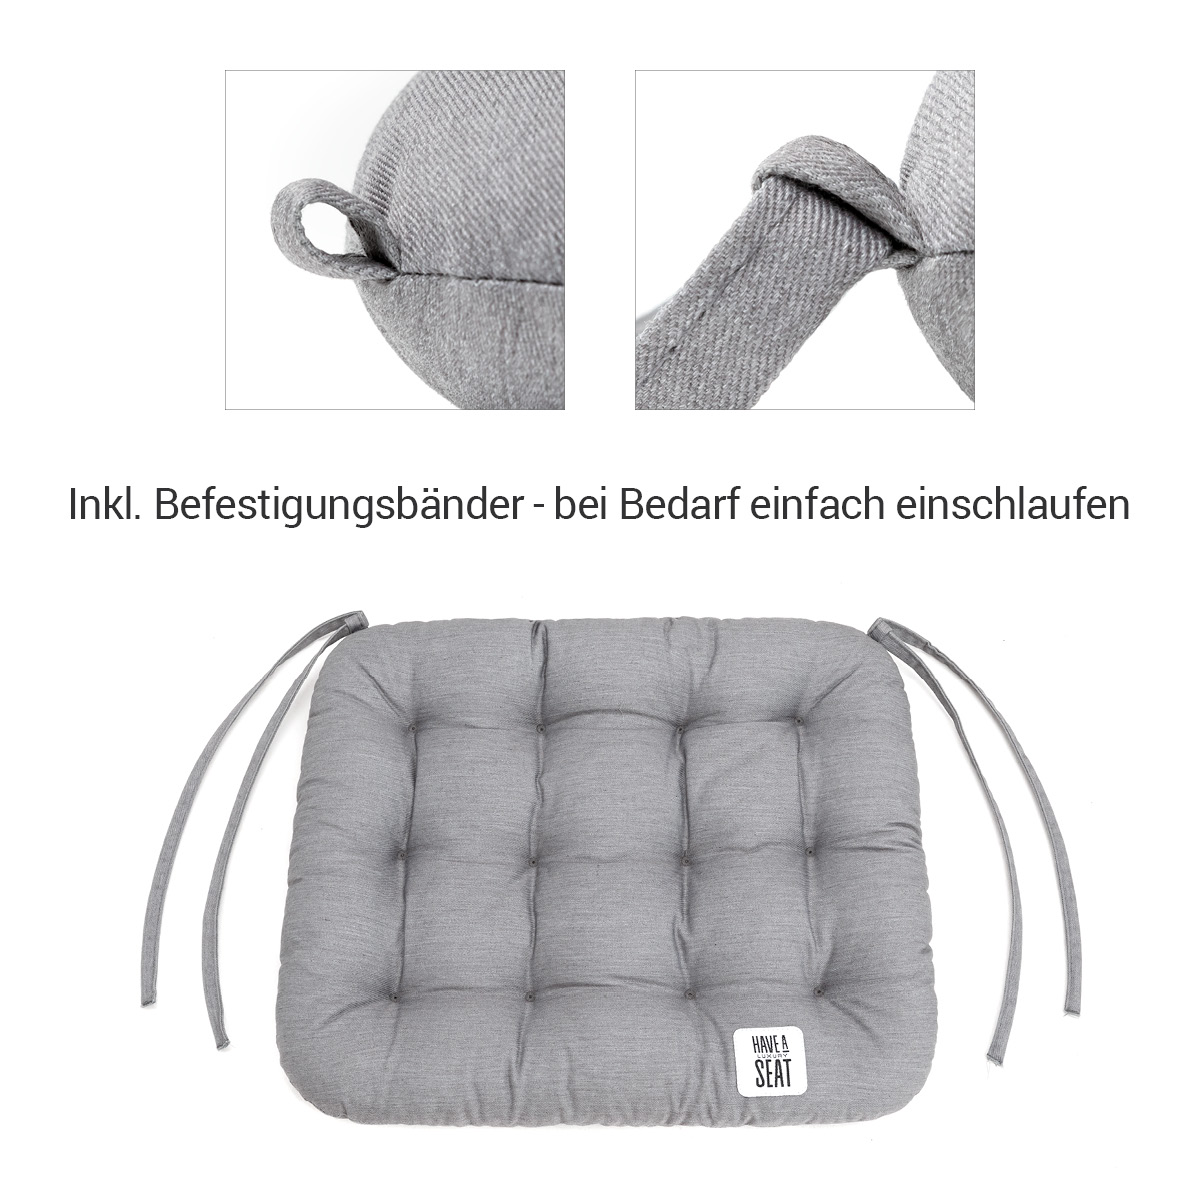 HAVE A SEAT Luxury | Sitzkissen 40 x 35 cm (2 St.) - bequemes Sitzpolster  für Klappstühle - waschbar bis 95° C, Trockner geeignet - Made in Germany